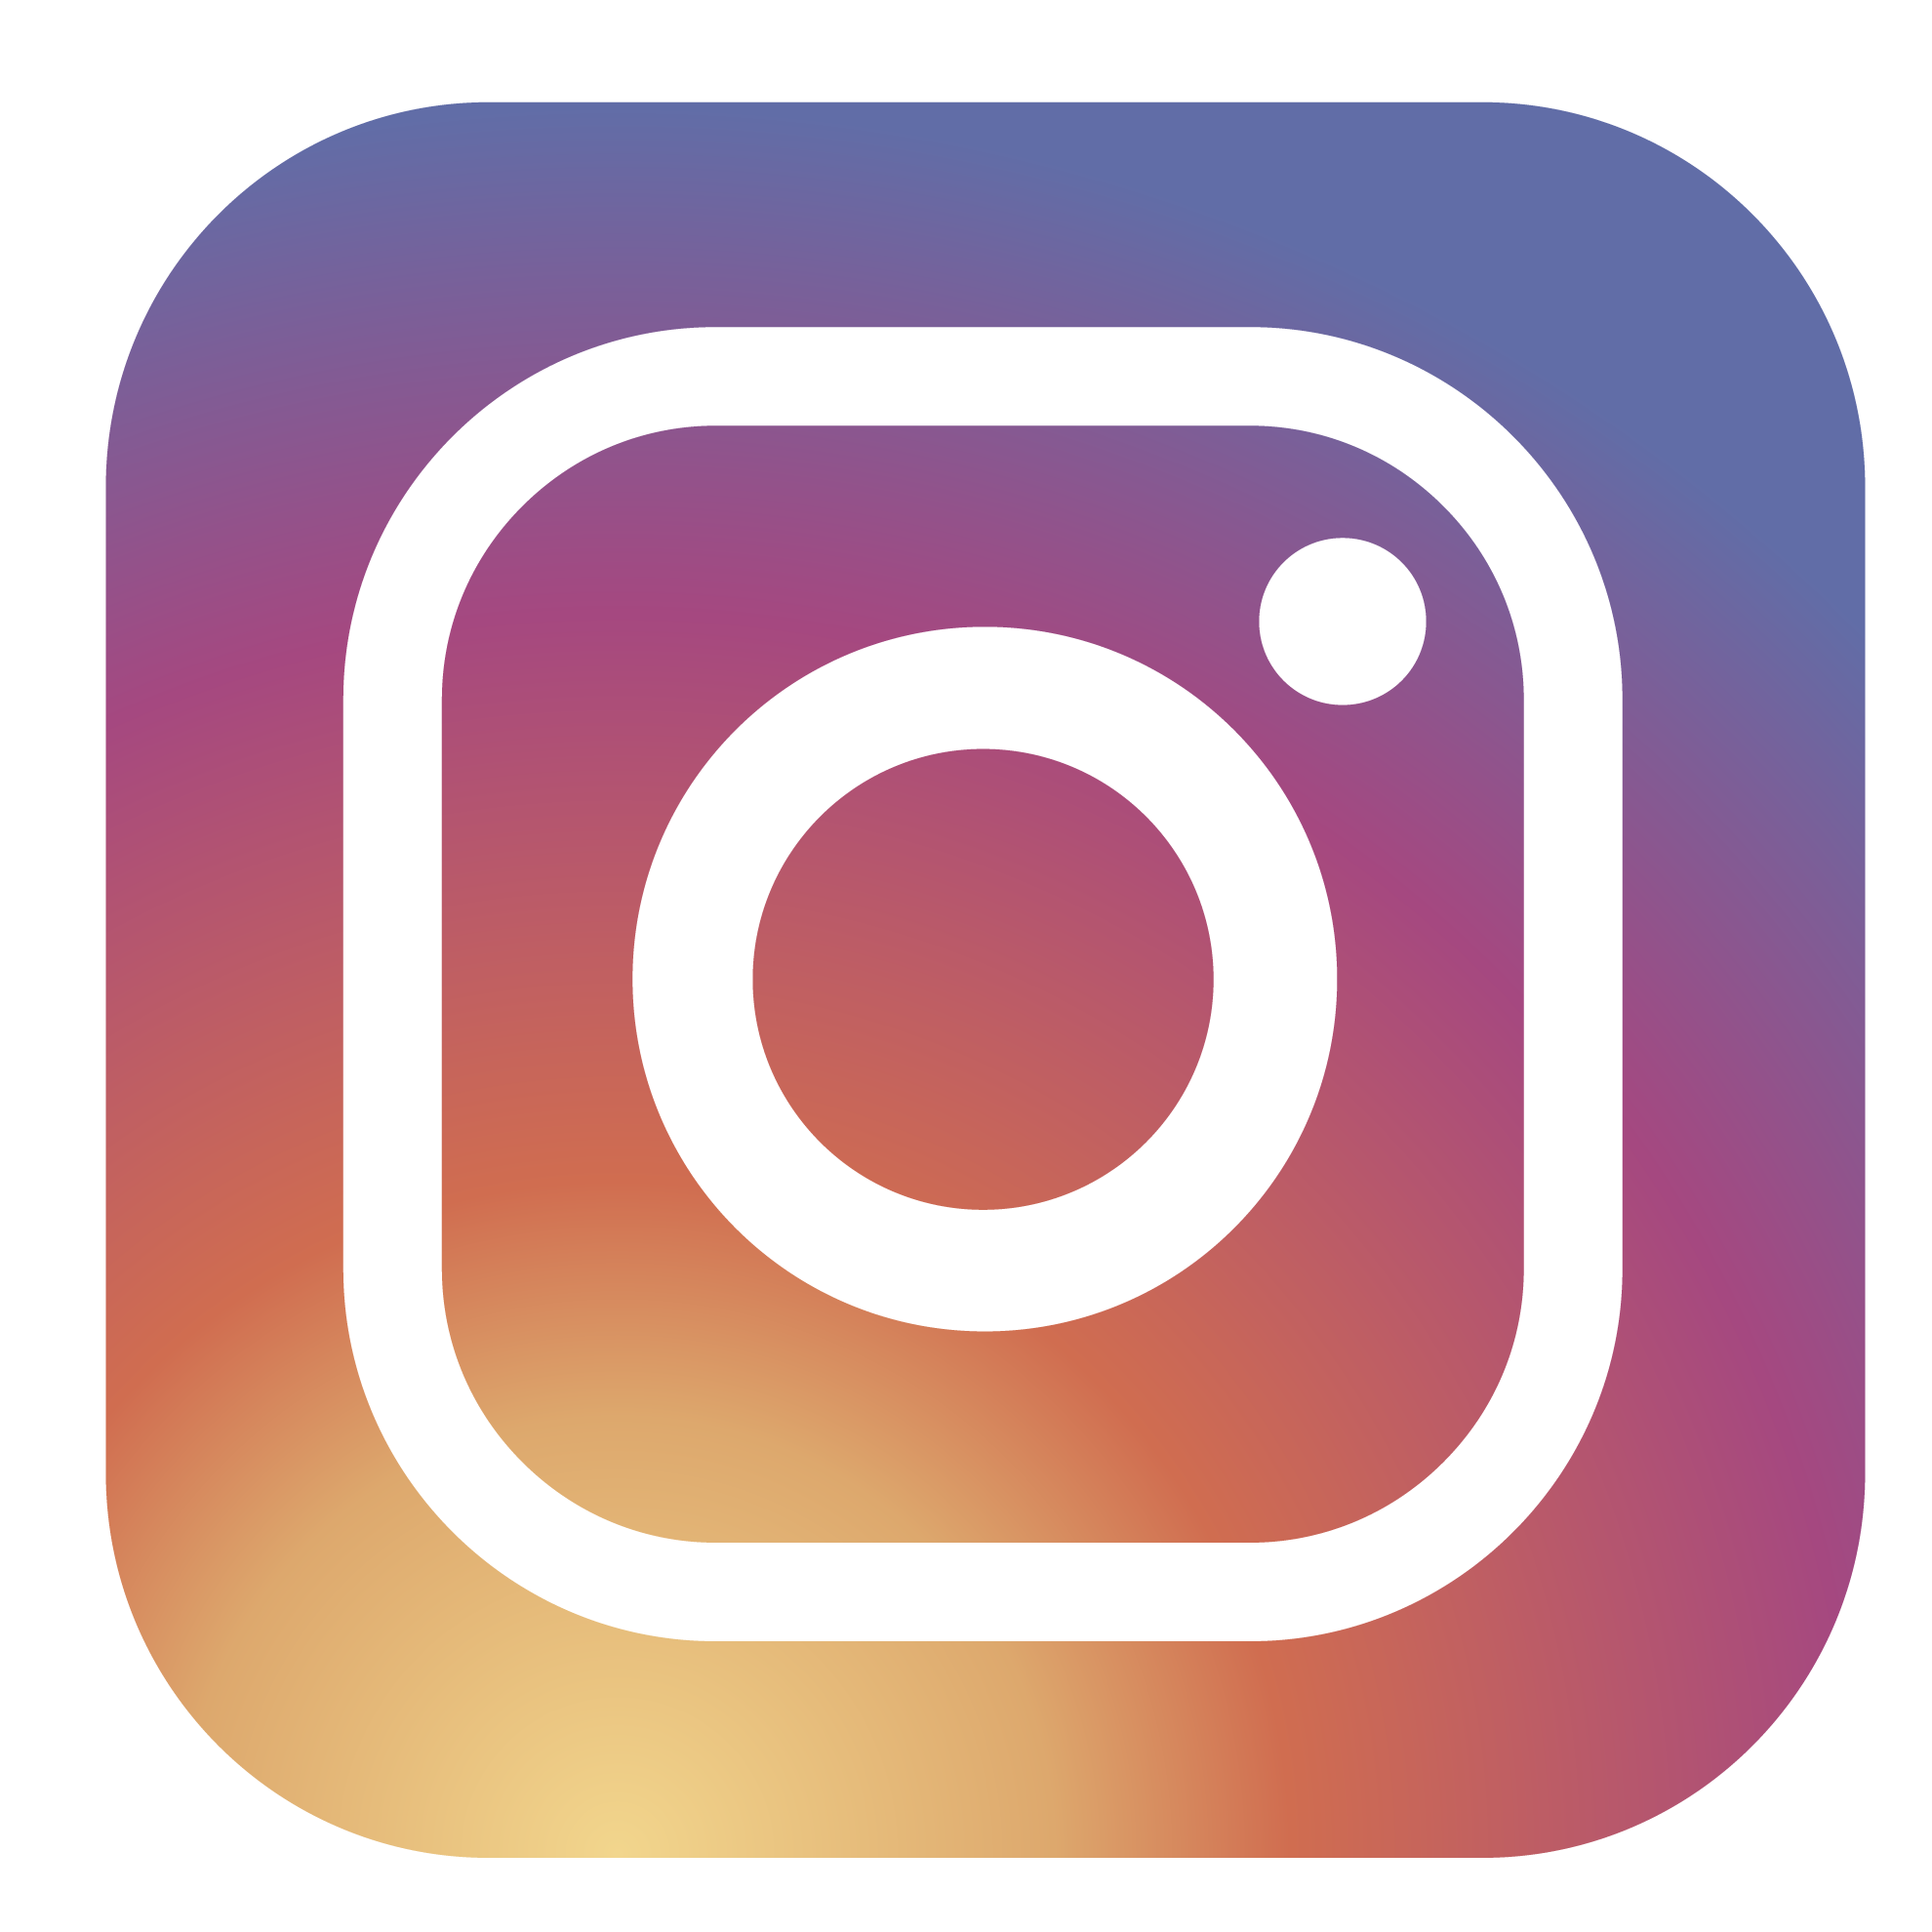 Logotipo Instagram incluido al cambiarse de compañía móvil